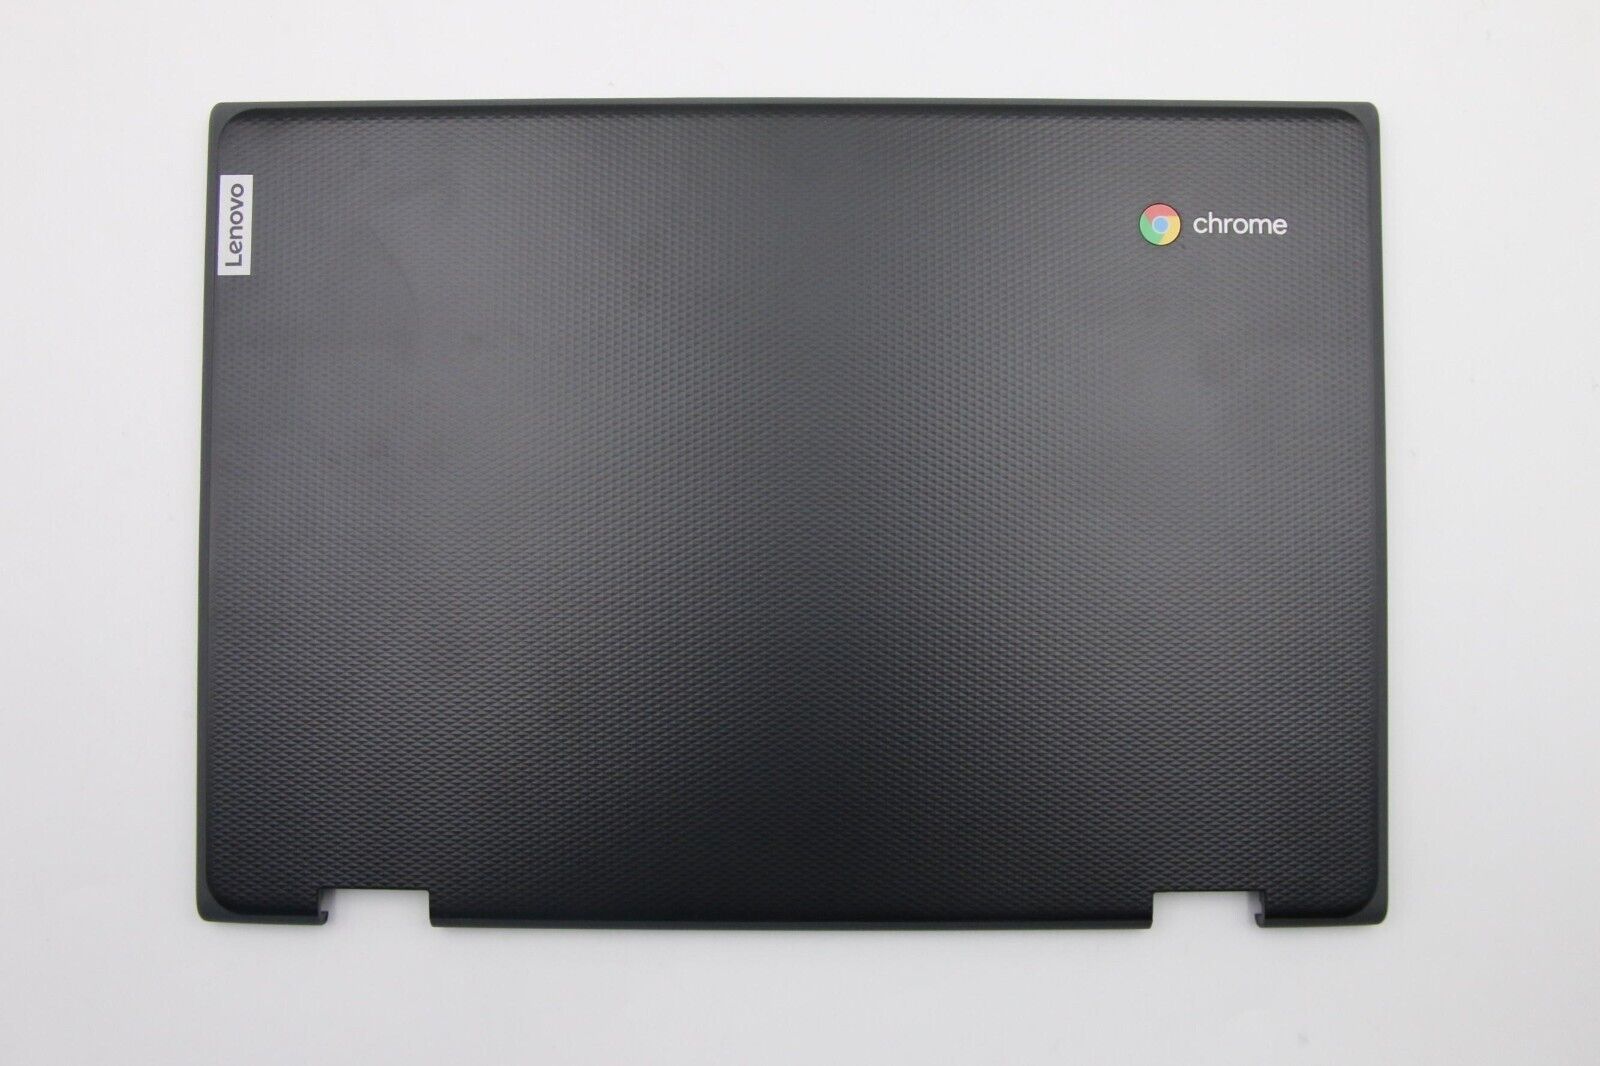 NEW / OEM Lenovo 300E Chromebook 2nd Gen (82CE & 81MB) LCD Back Cover 5CB0T70713